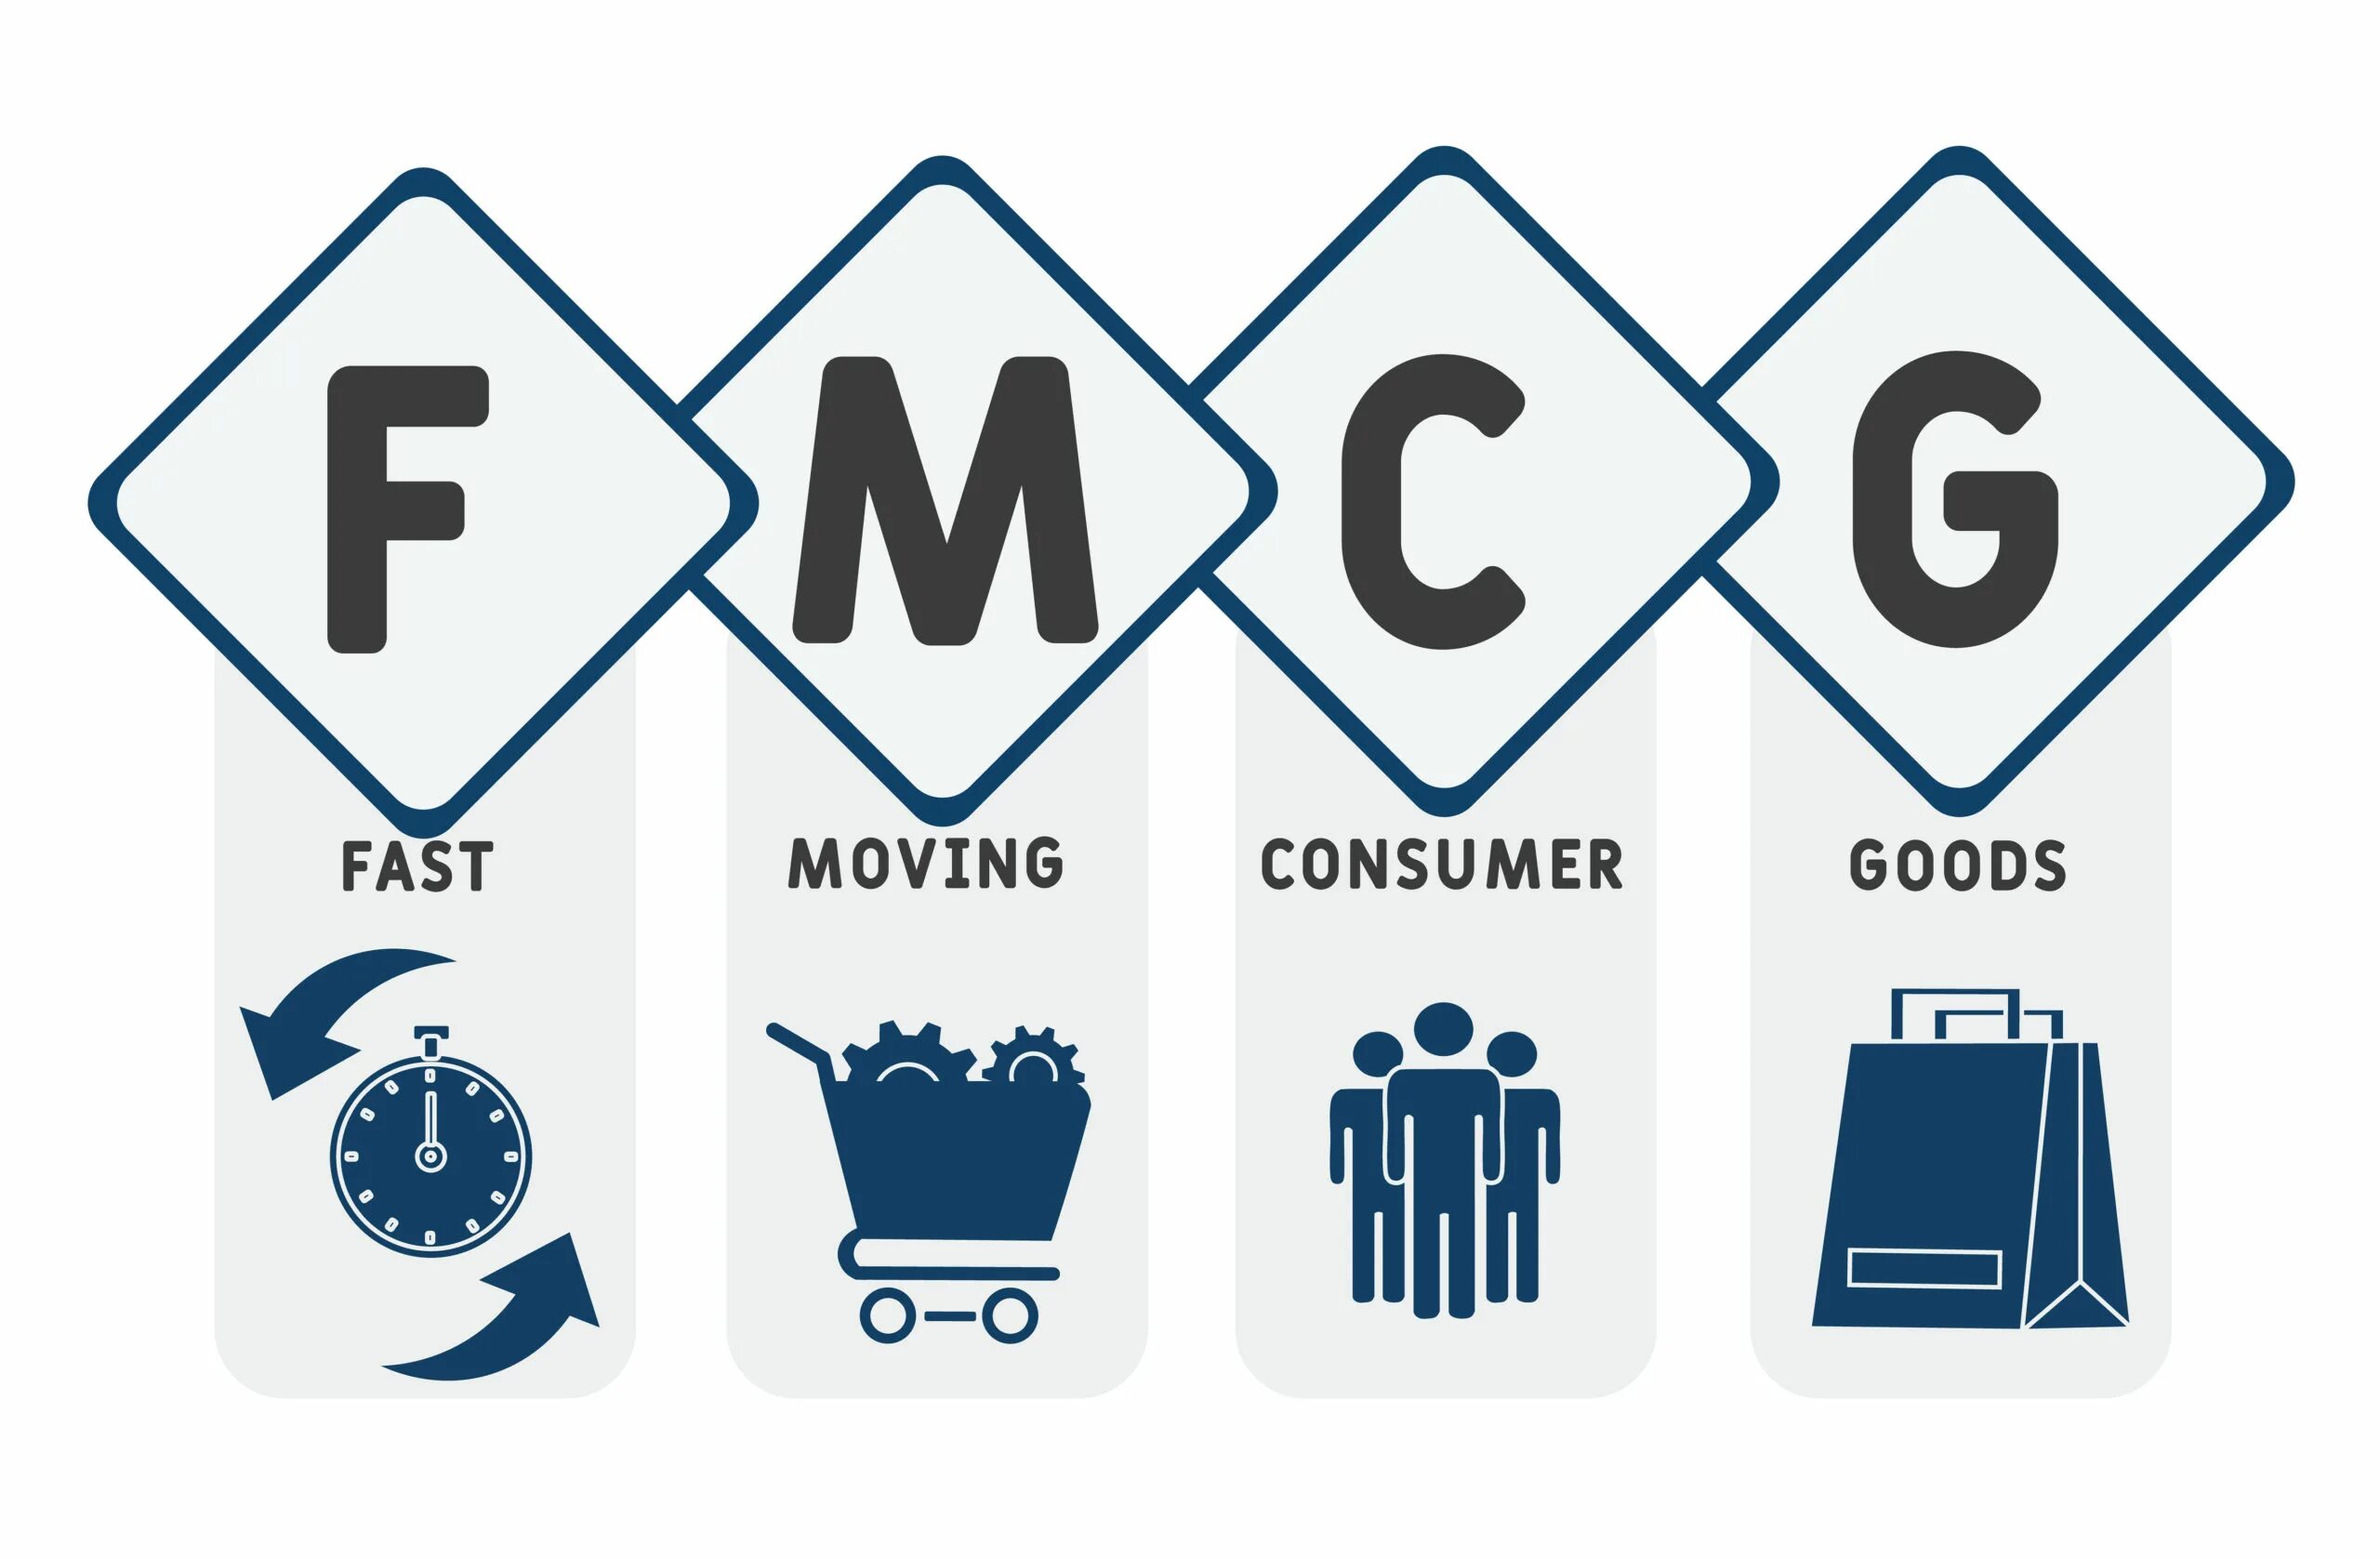 FMCG продукты. Рынок FMCG. FMCG товары народного потребления что это. Маркетинг FMCG.